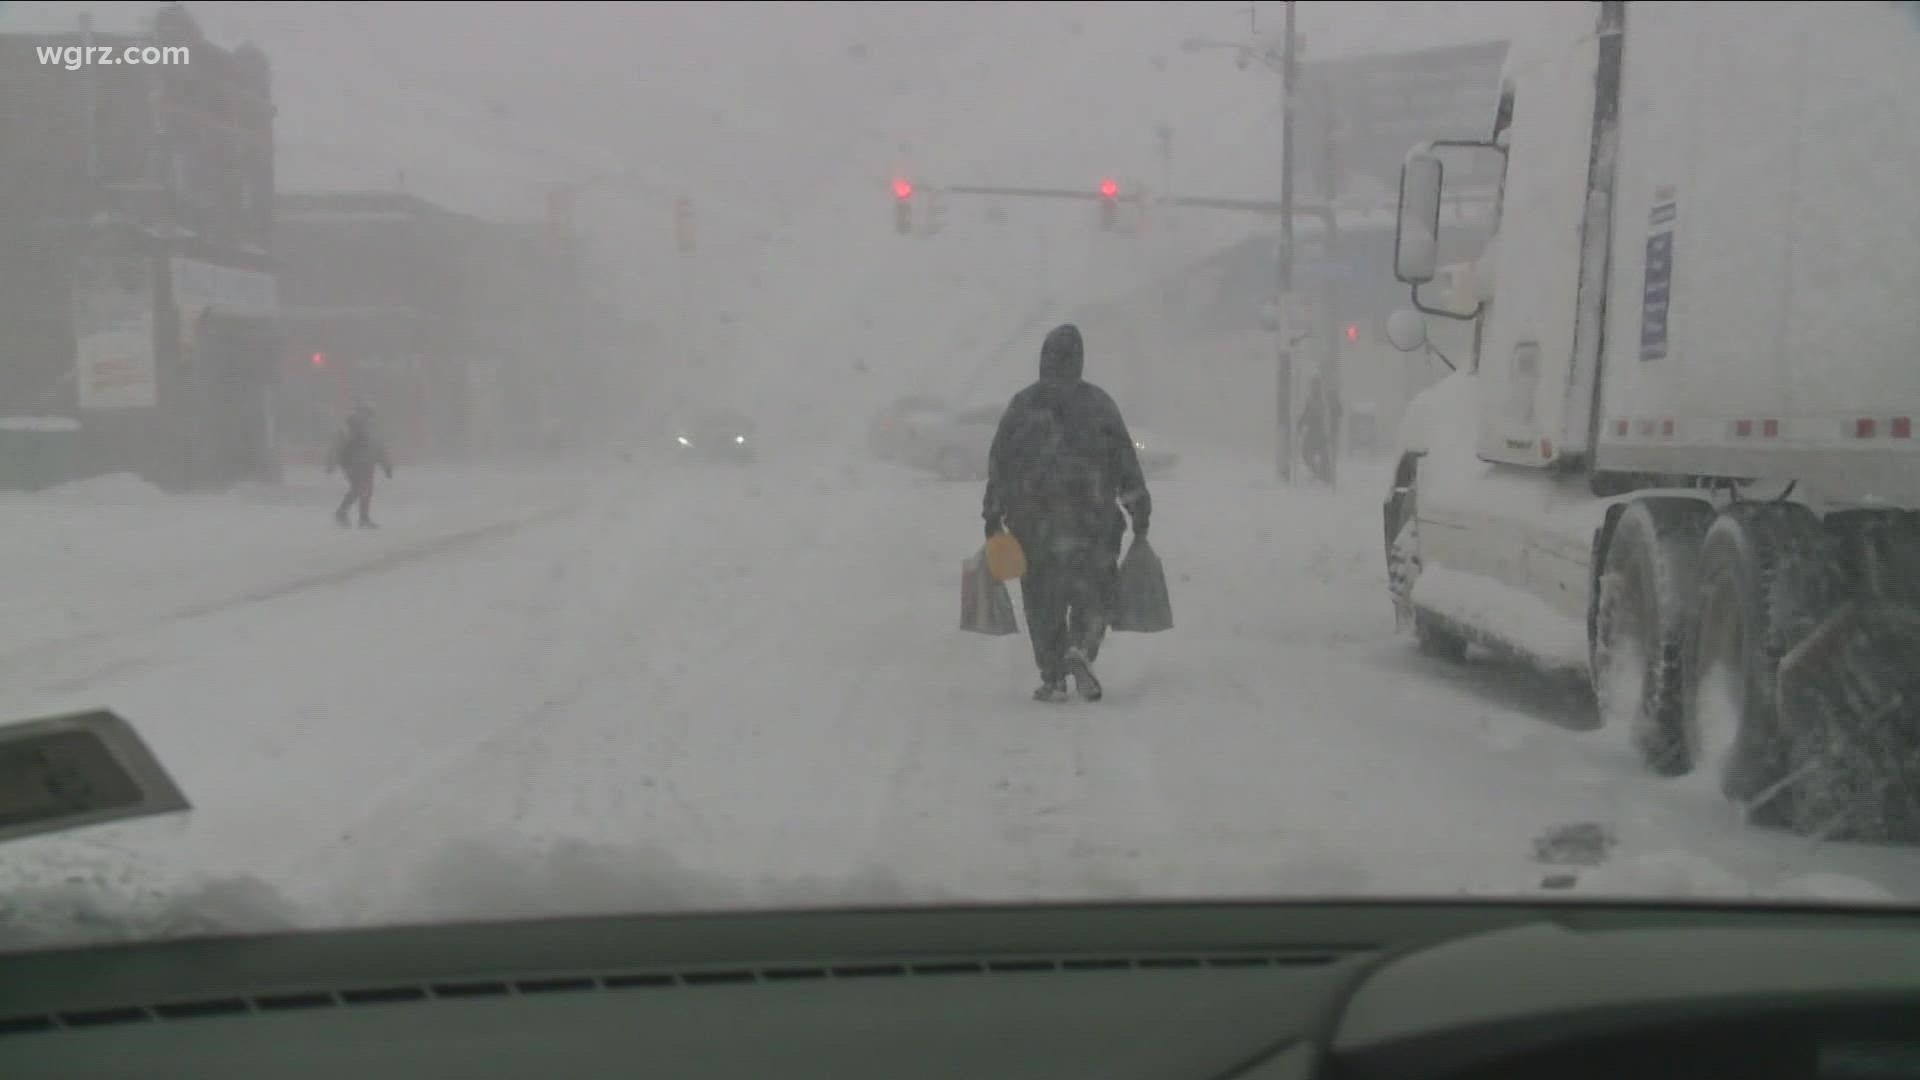 Buffalo is snowiest city in America